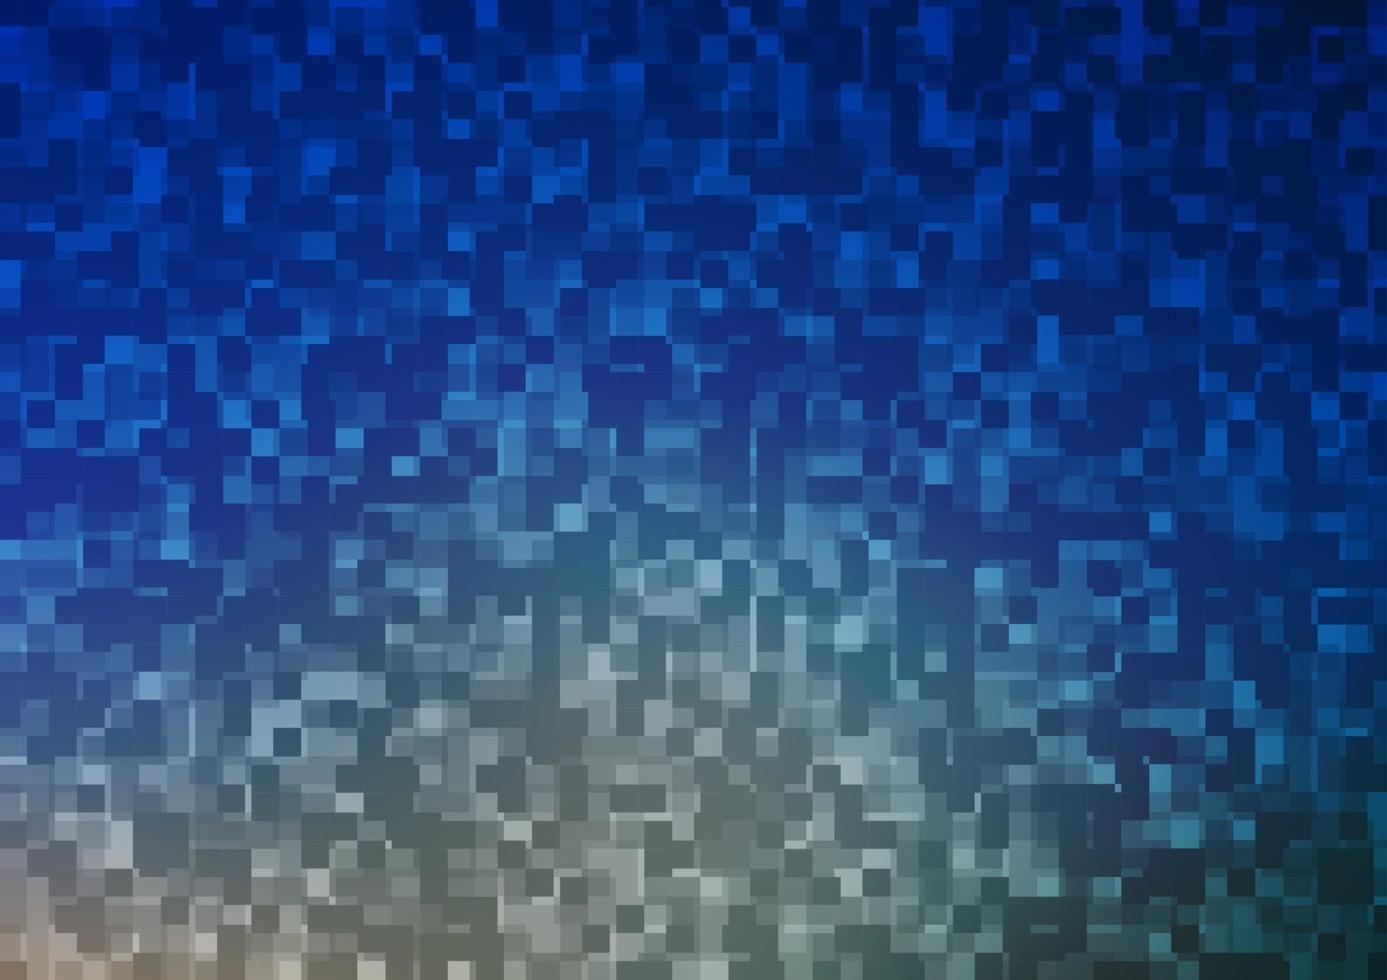 modelo de vetor azul claro com cristais, retângulos.